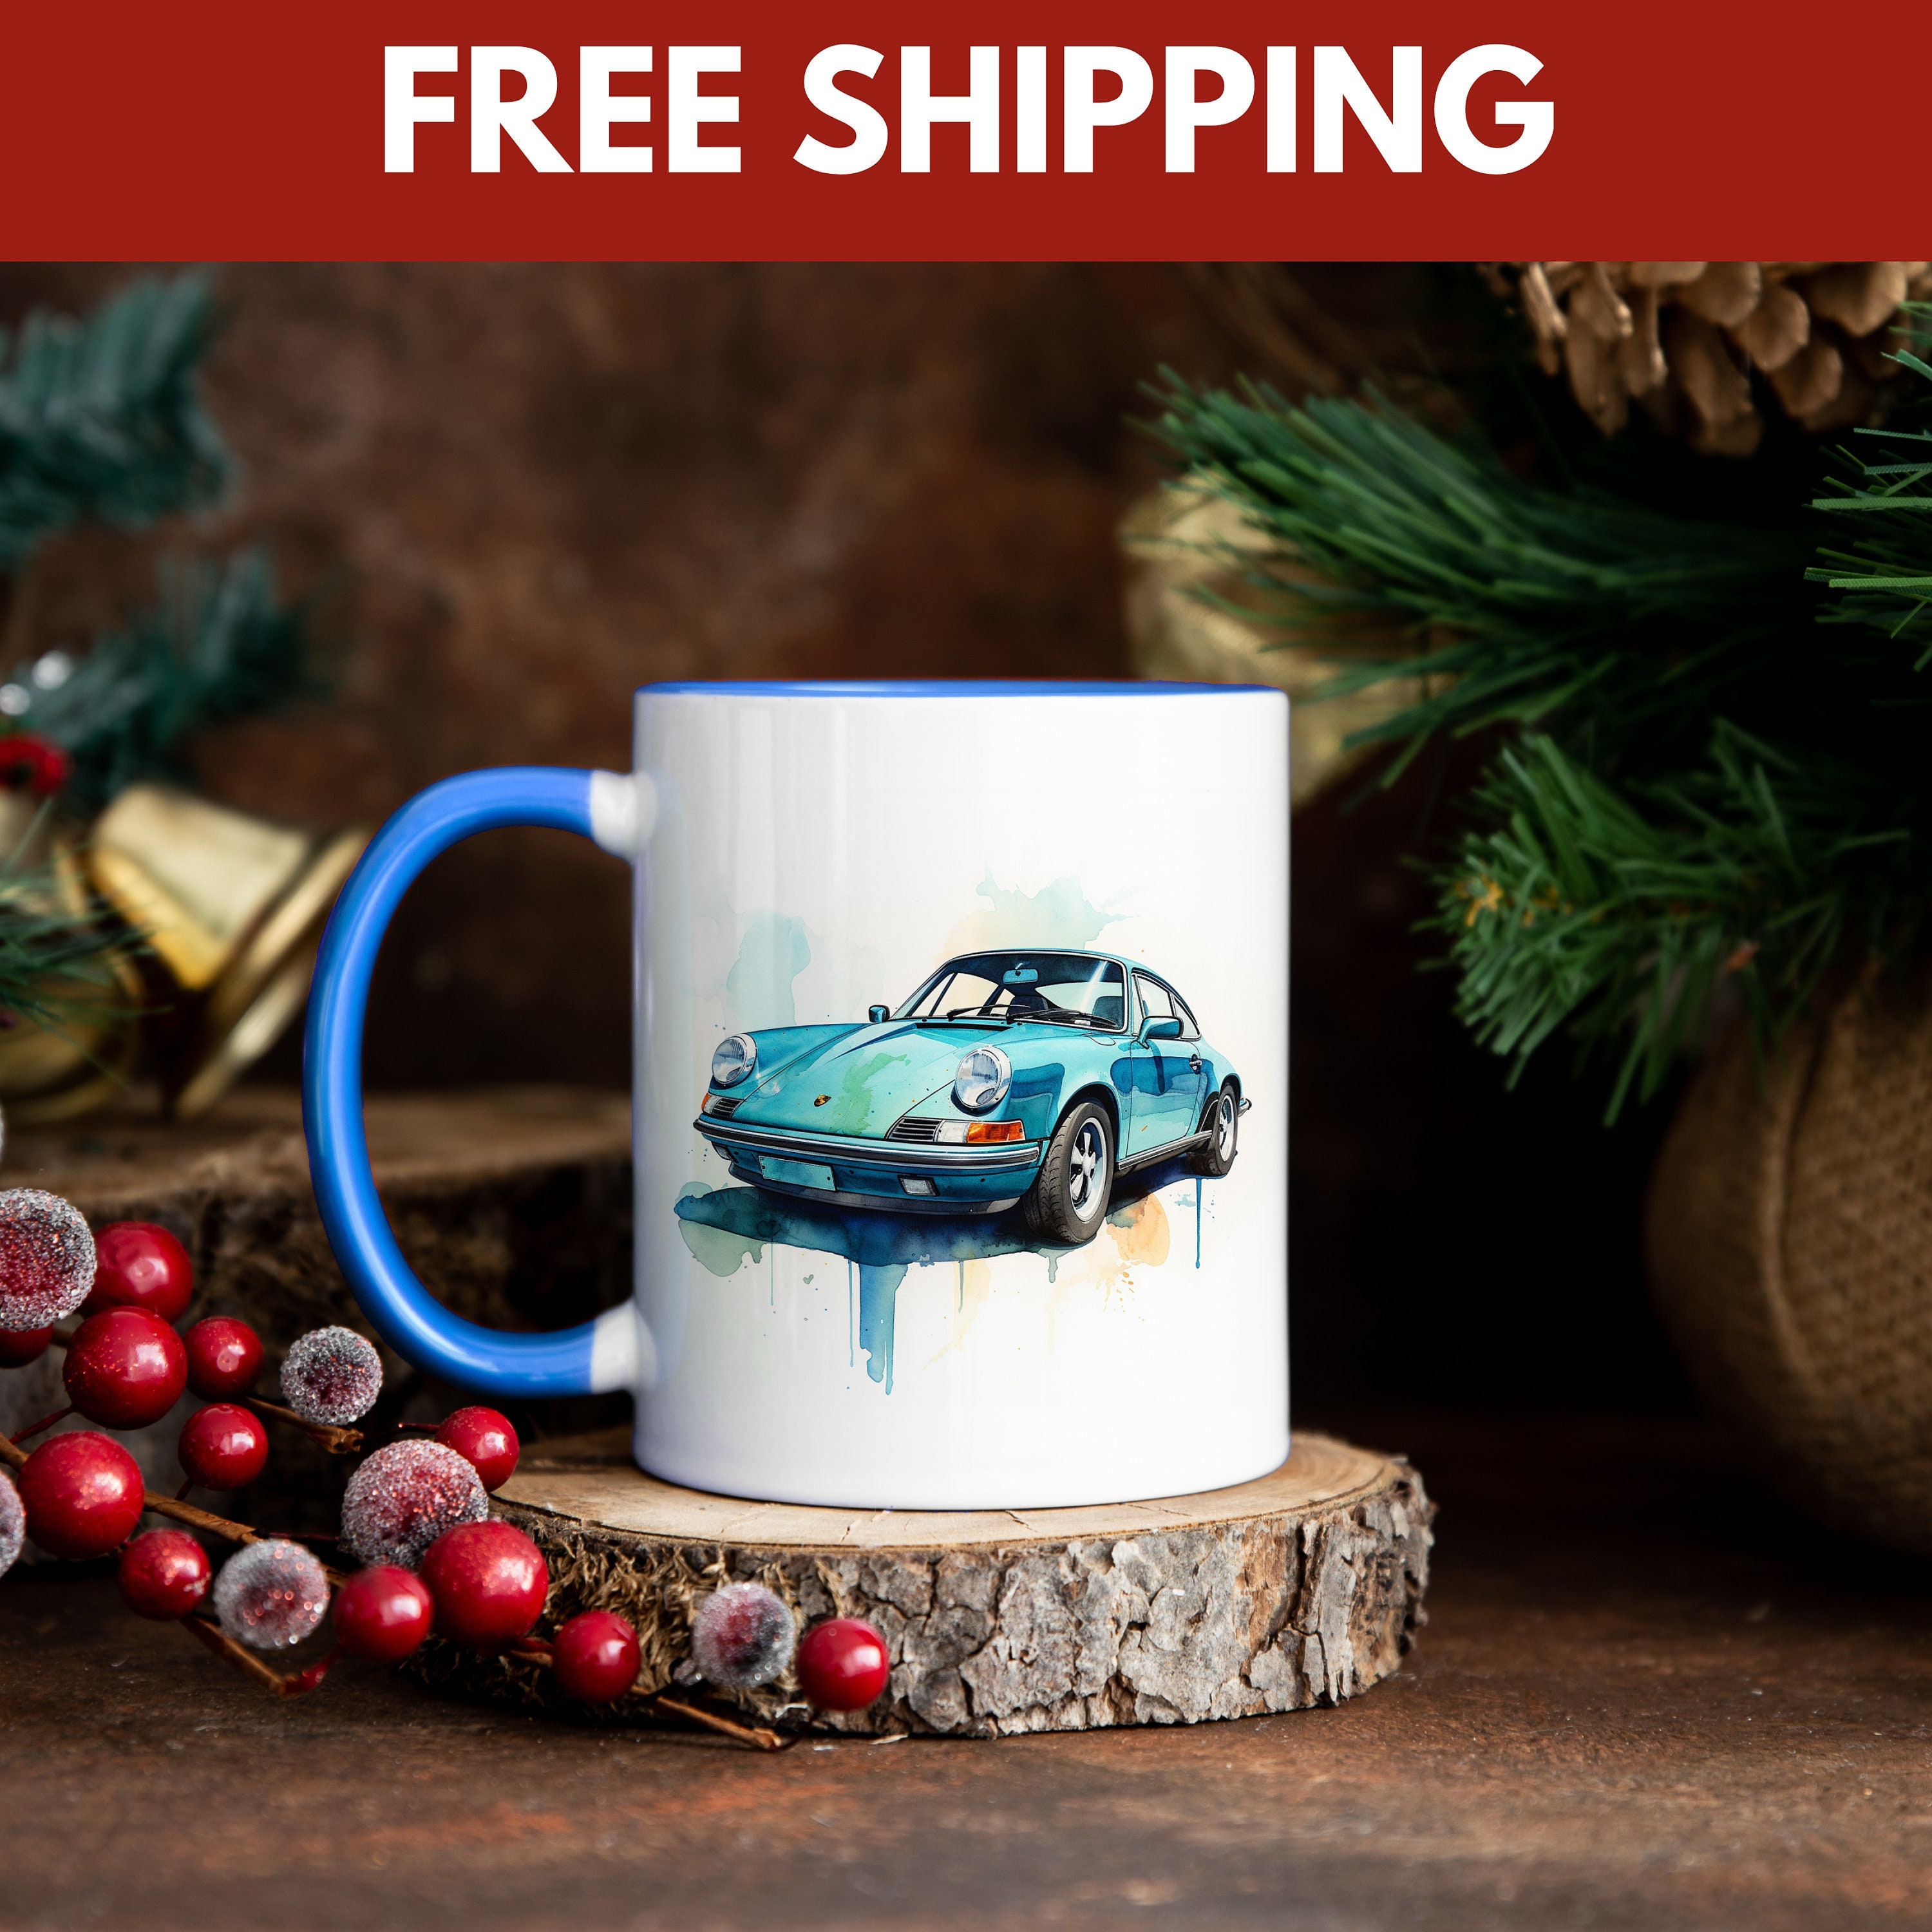 Martini Racing Livery Coffee Tumbler Gift - Drive Fun Cars and